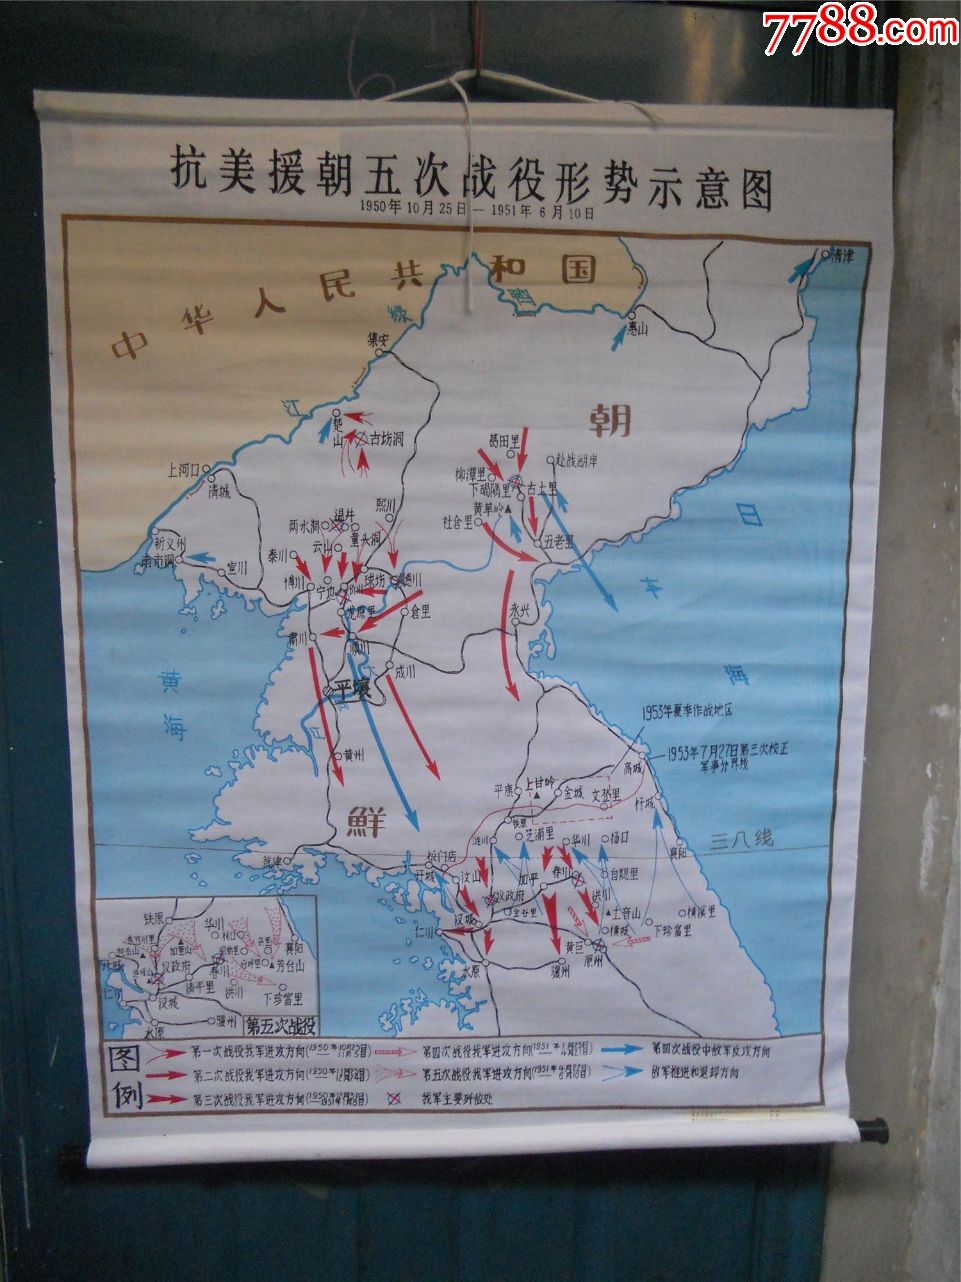 朝鲜战争各阶段示意图图片